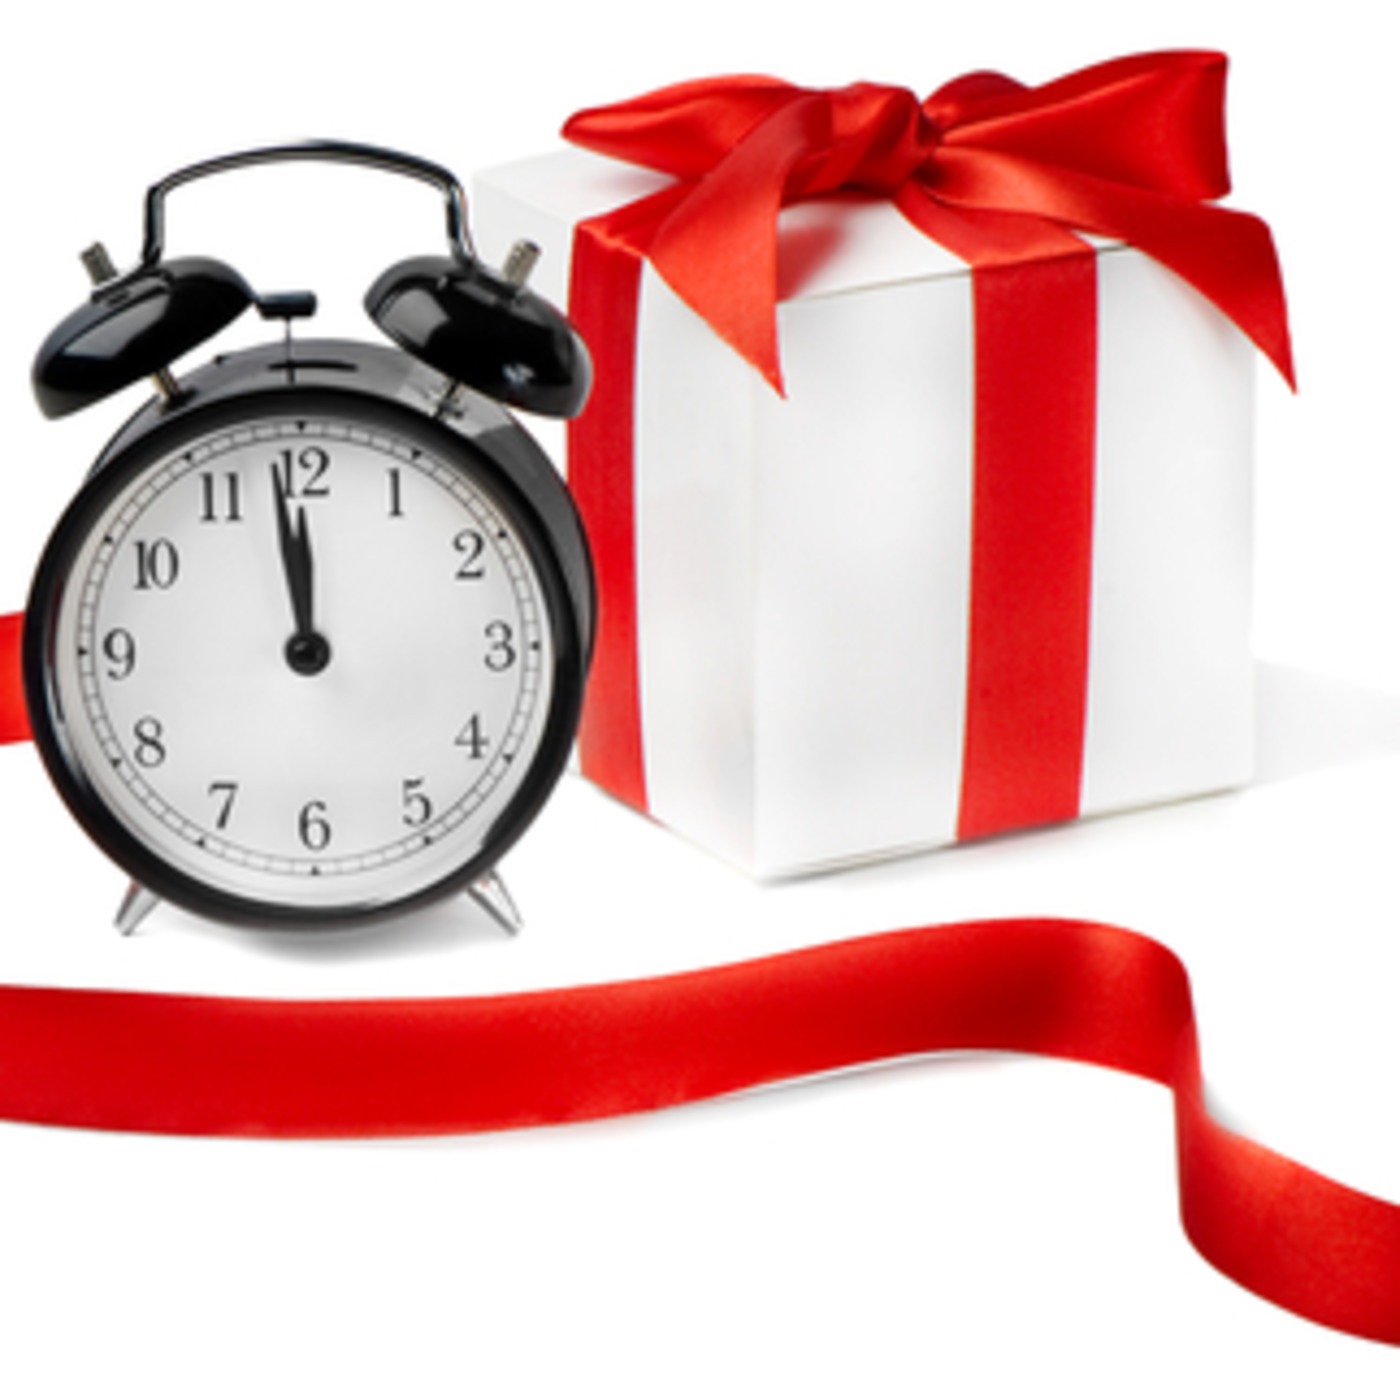 Речь для подарка часов. Подарок часы и ручка другу на прозрачном фоне. Нельзя дарить часы в подарок. Аватарки для авито подарки часы.